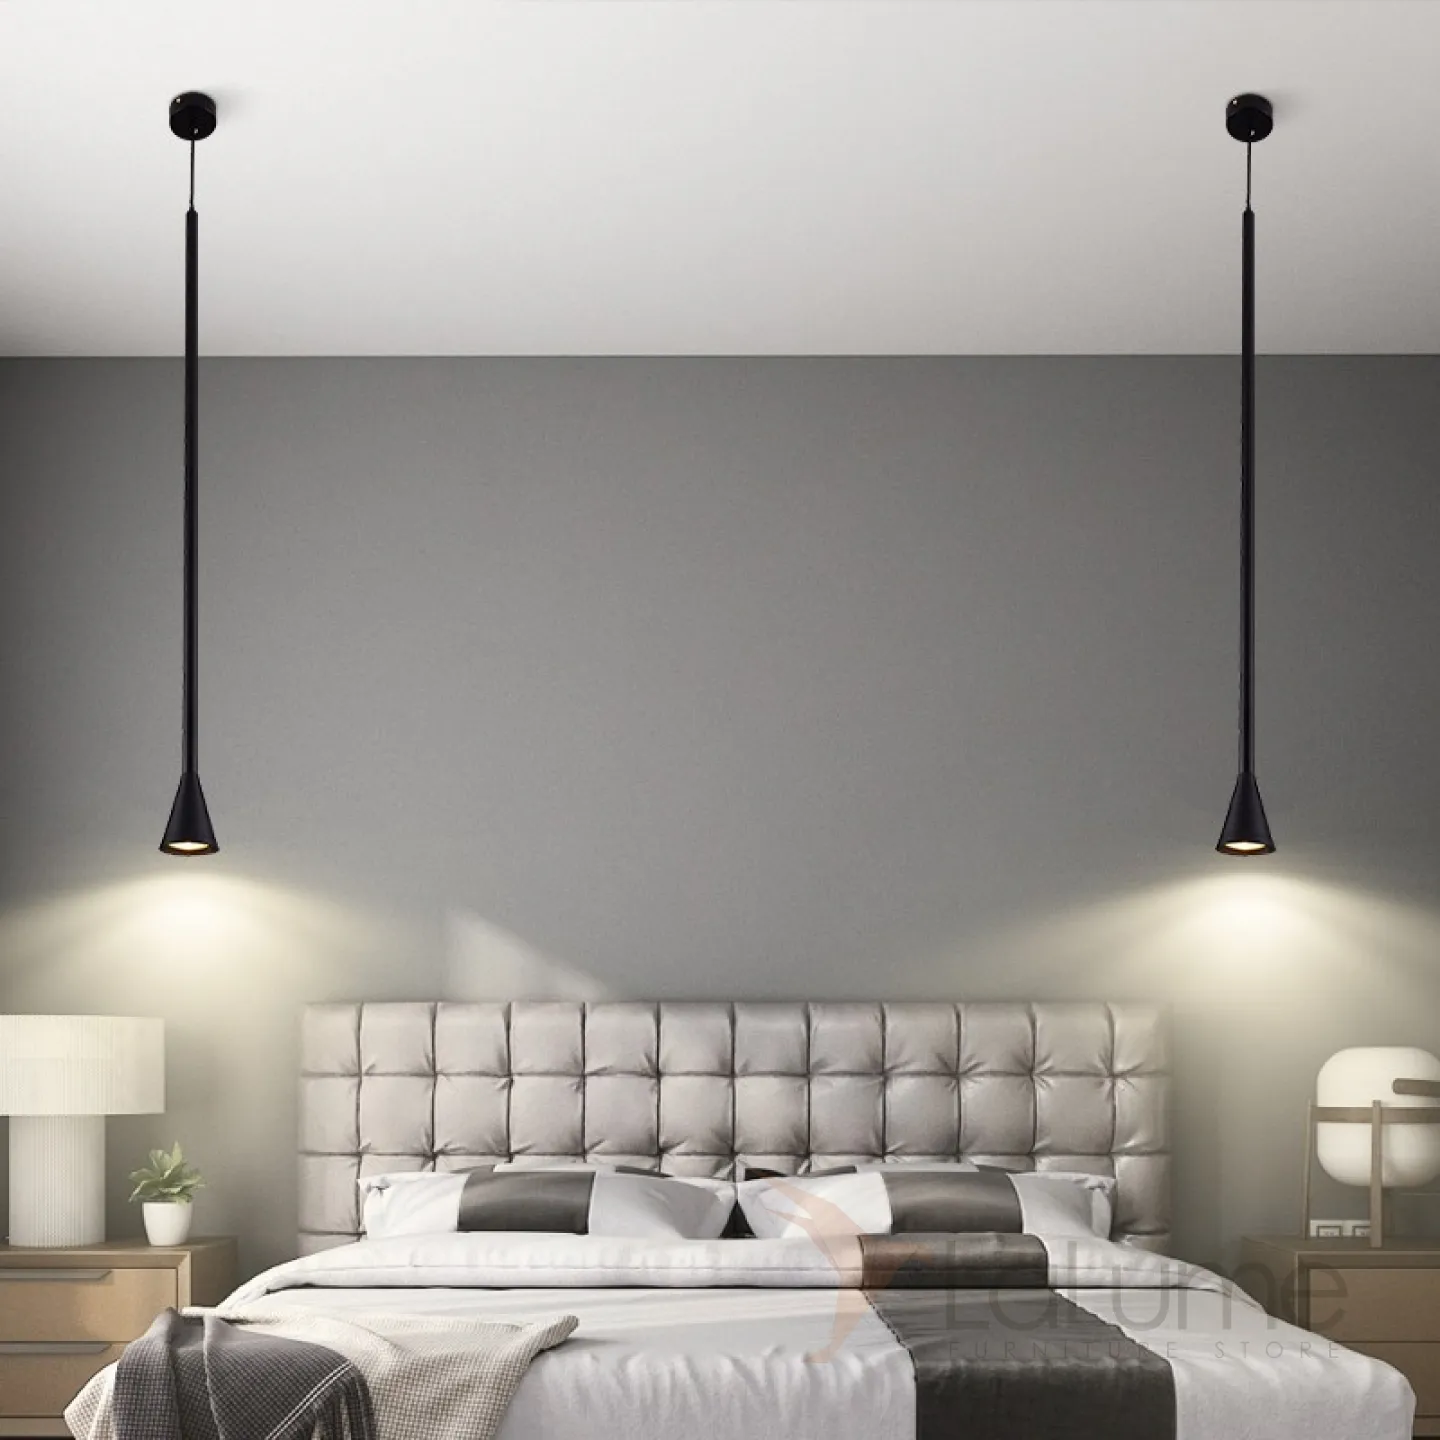 светильники над тумбочками в спальне свисающие с потолка